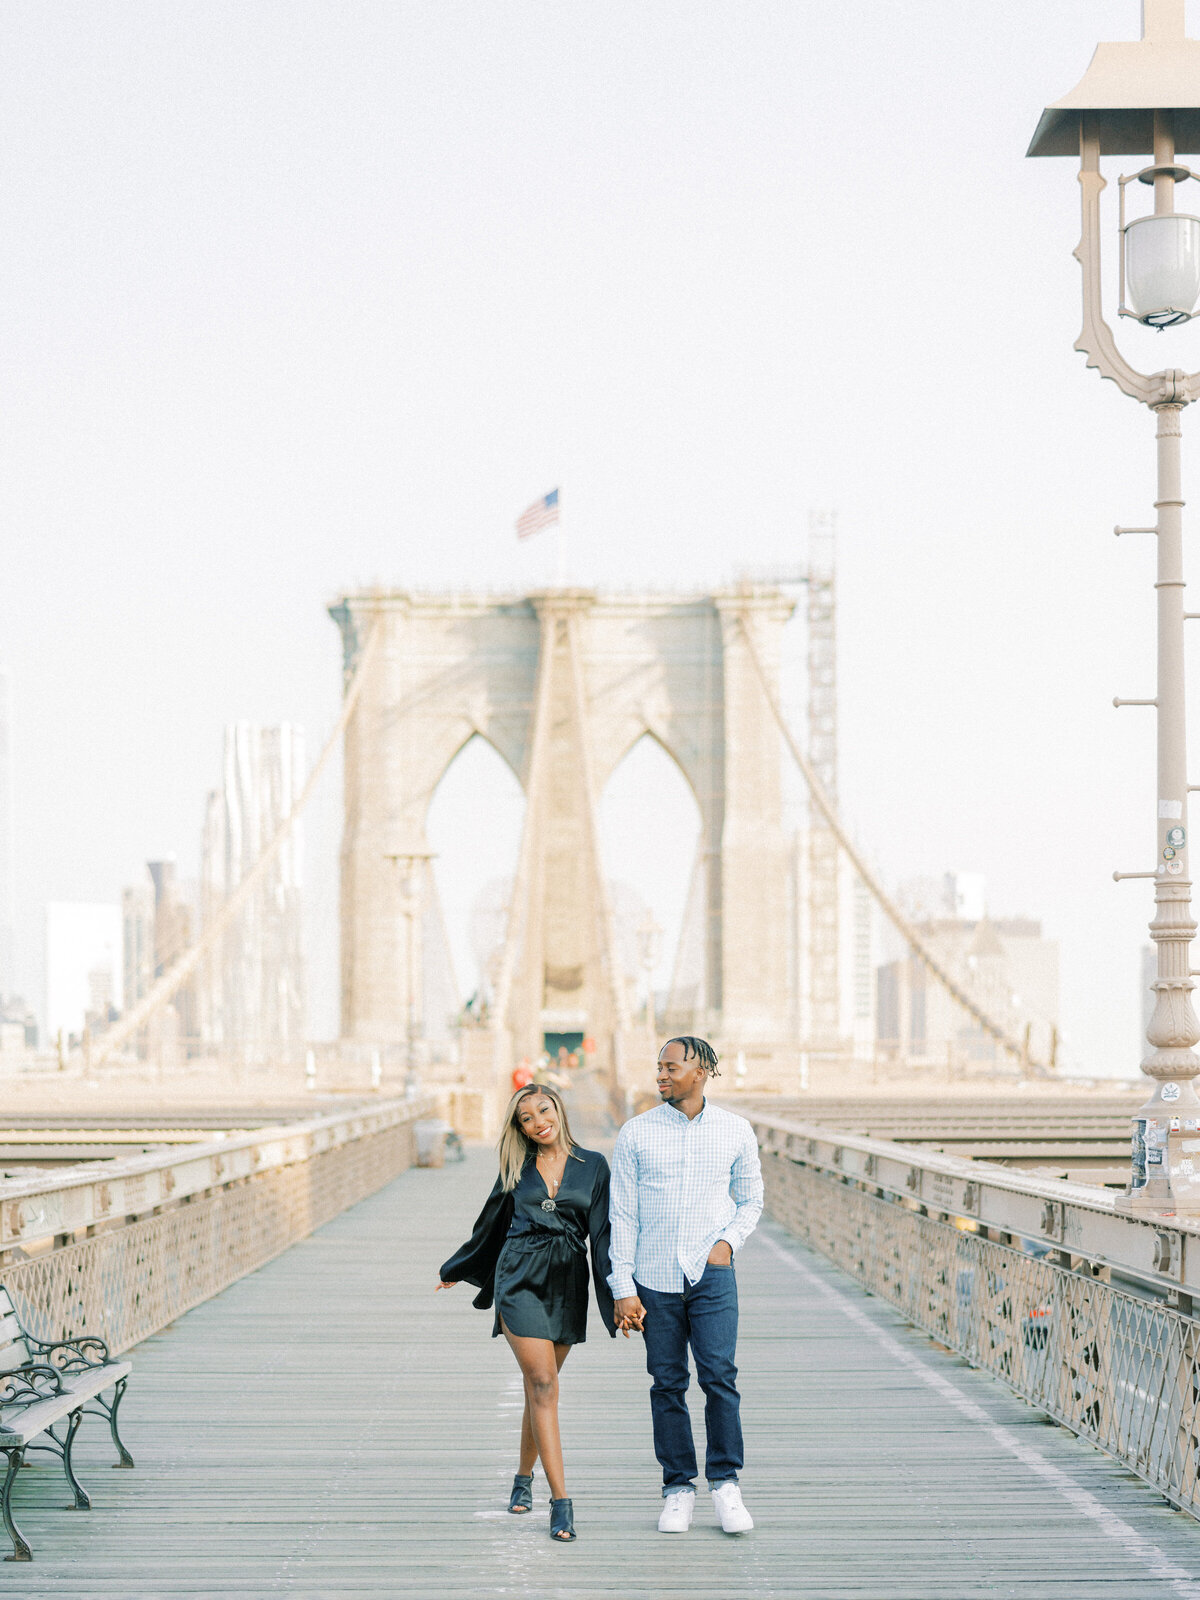 Brooklyn Bridge and DUMBO Sunrise, Engagement Session | Amarachi Ikeji Photography 20